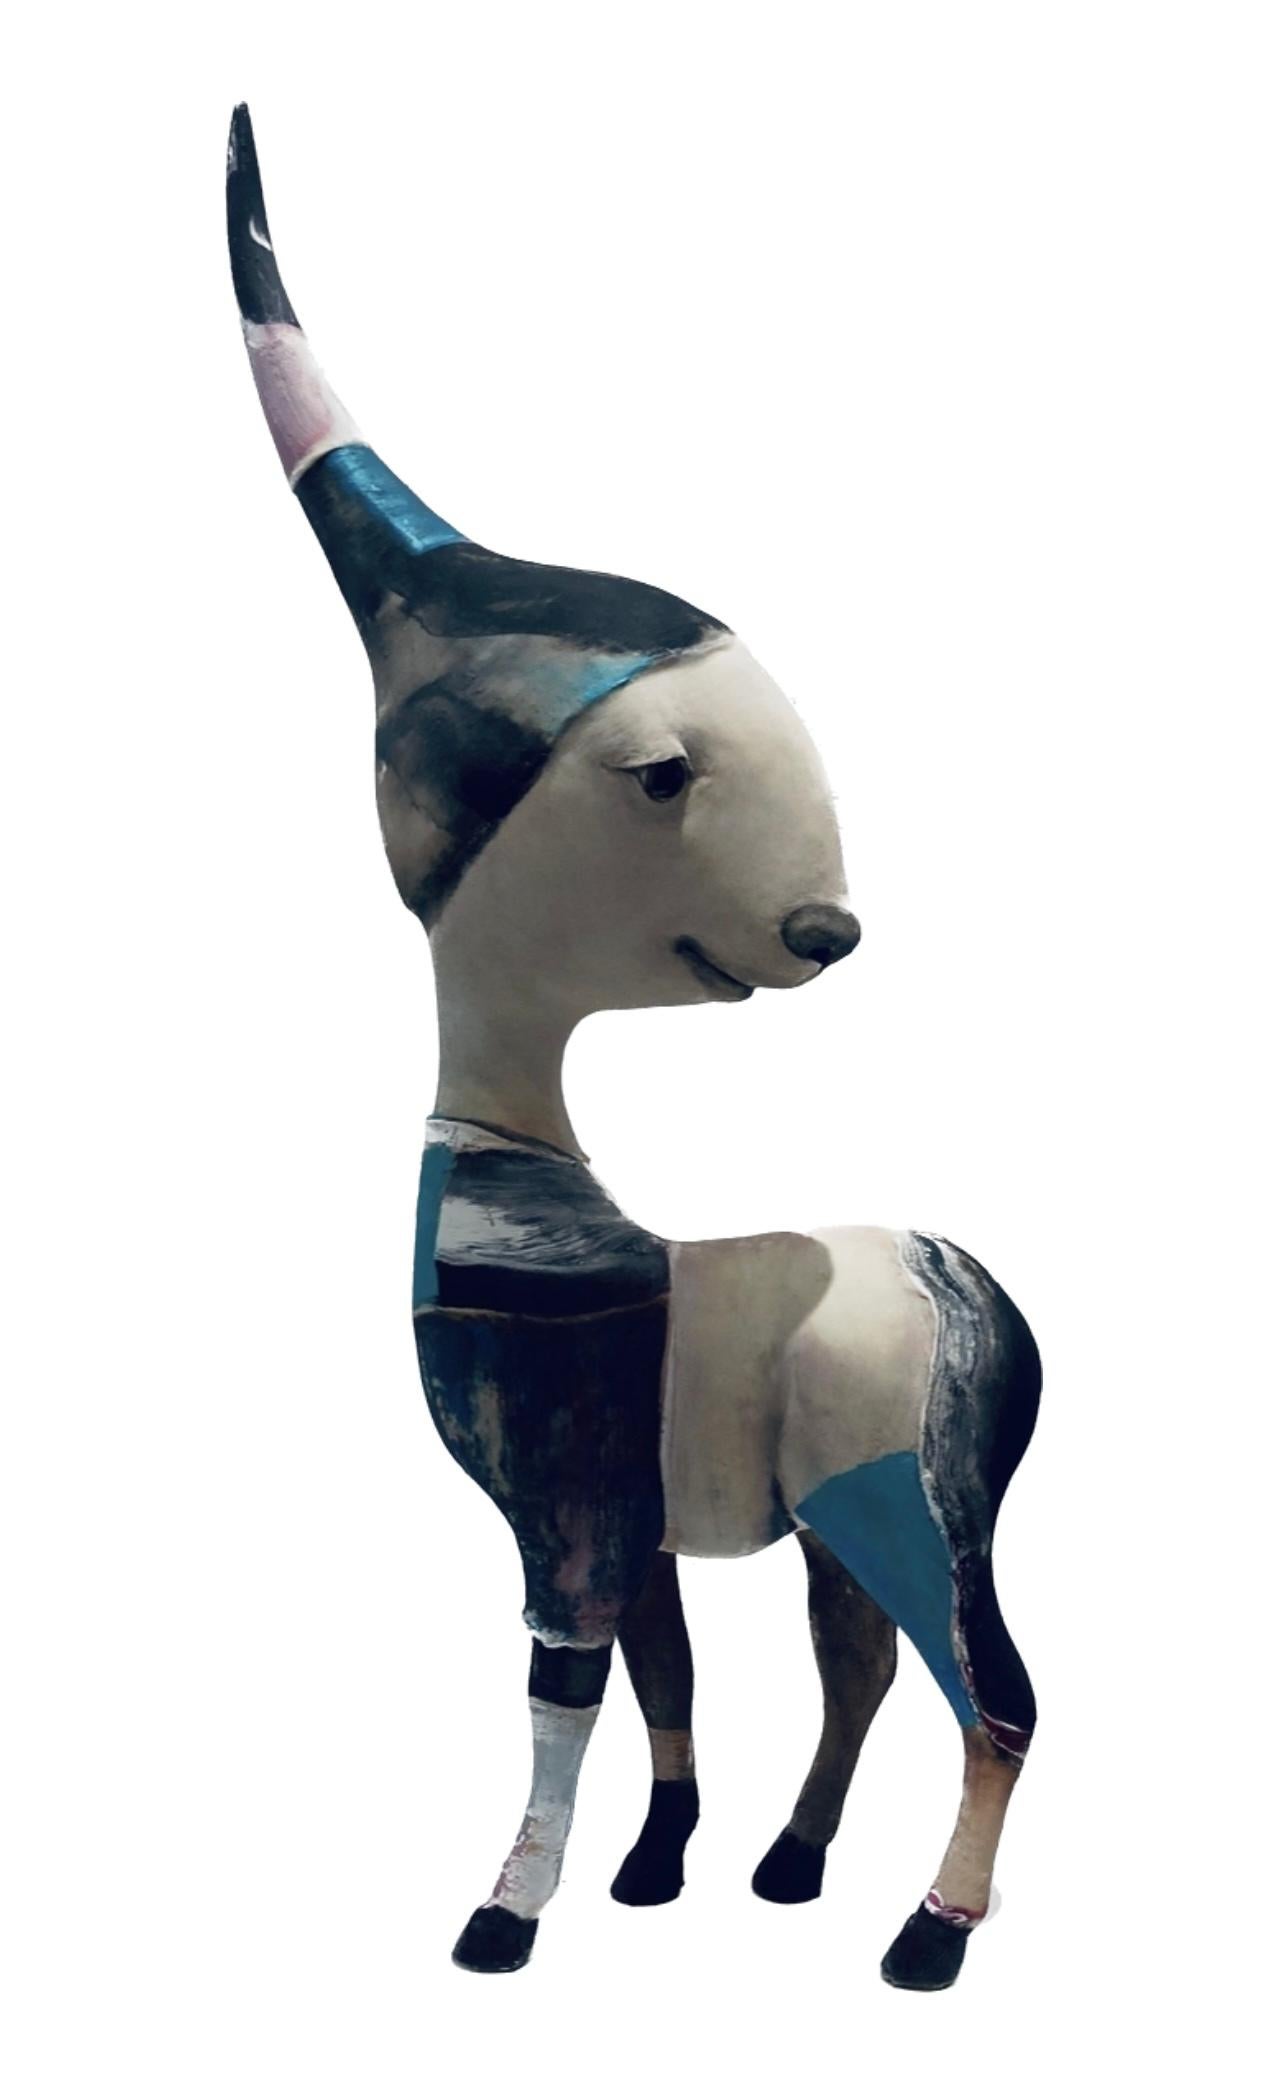 Corjan Nodelijk Figurative Sculpture - Paar Pair Mixed Media Sculpture Surreel Animal Bird Dog In Stock 